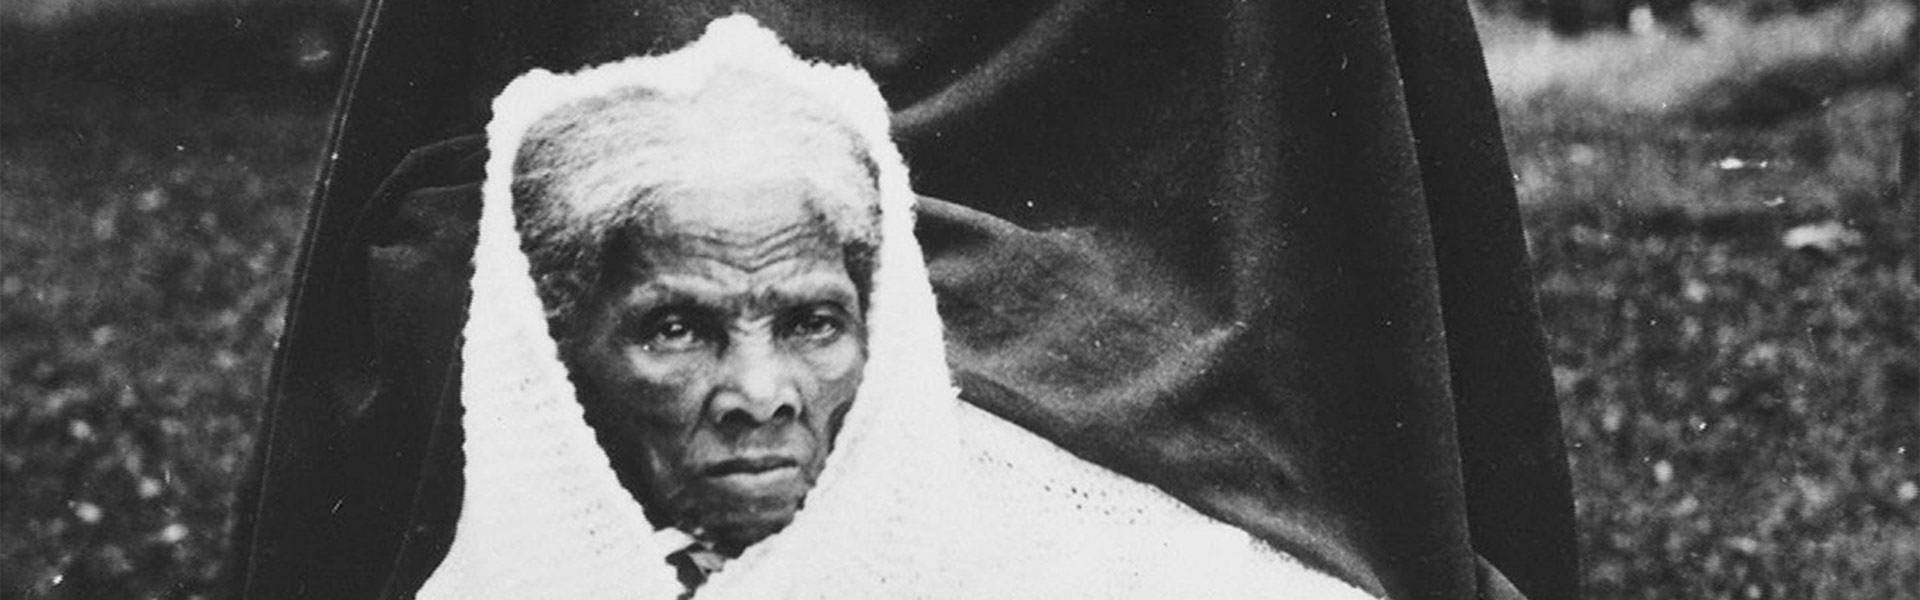 Harriet Tubman, heroic abolitionist